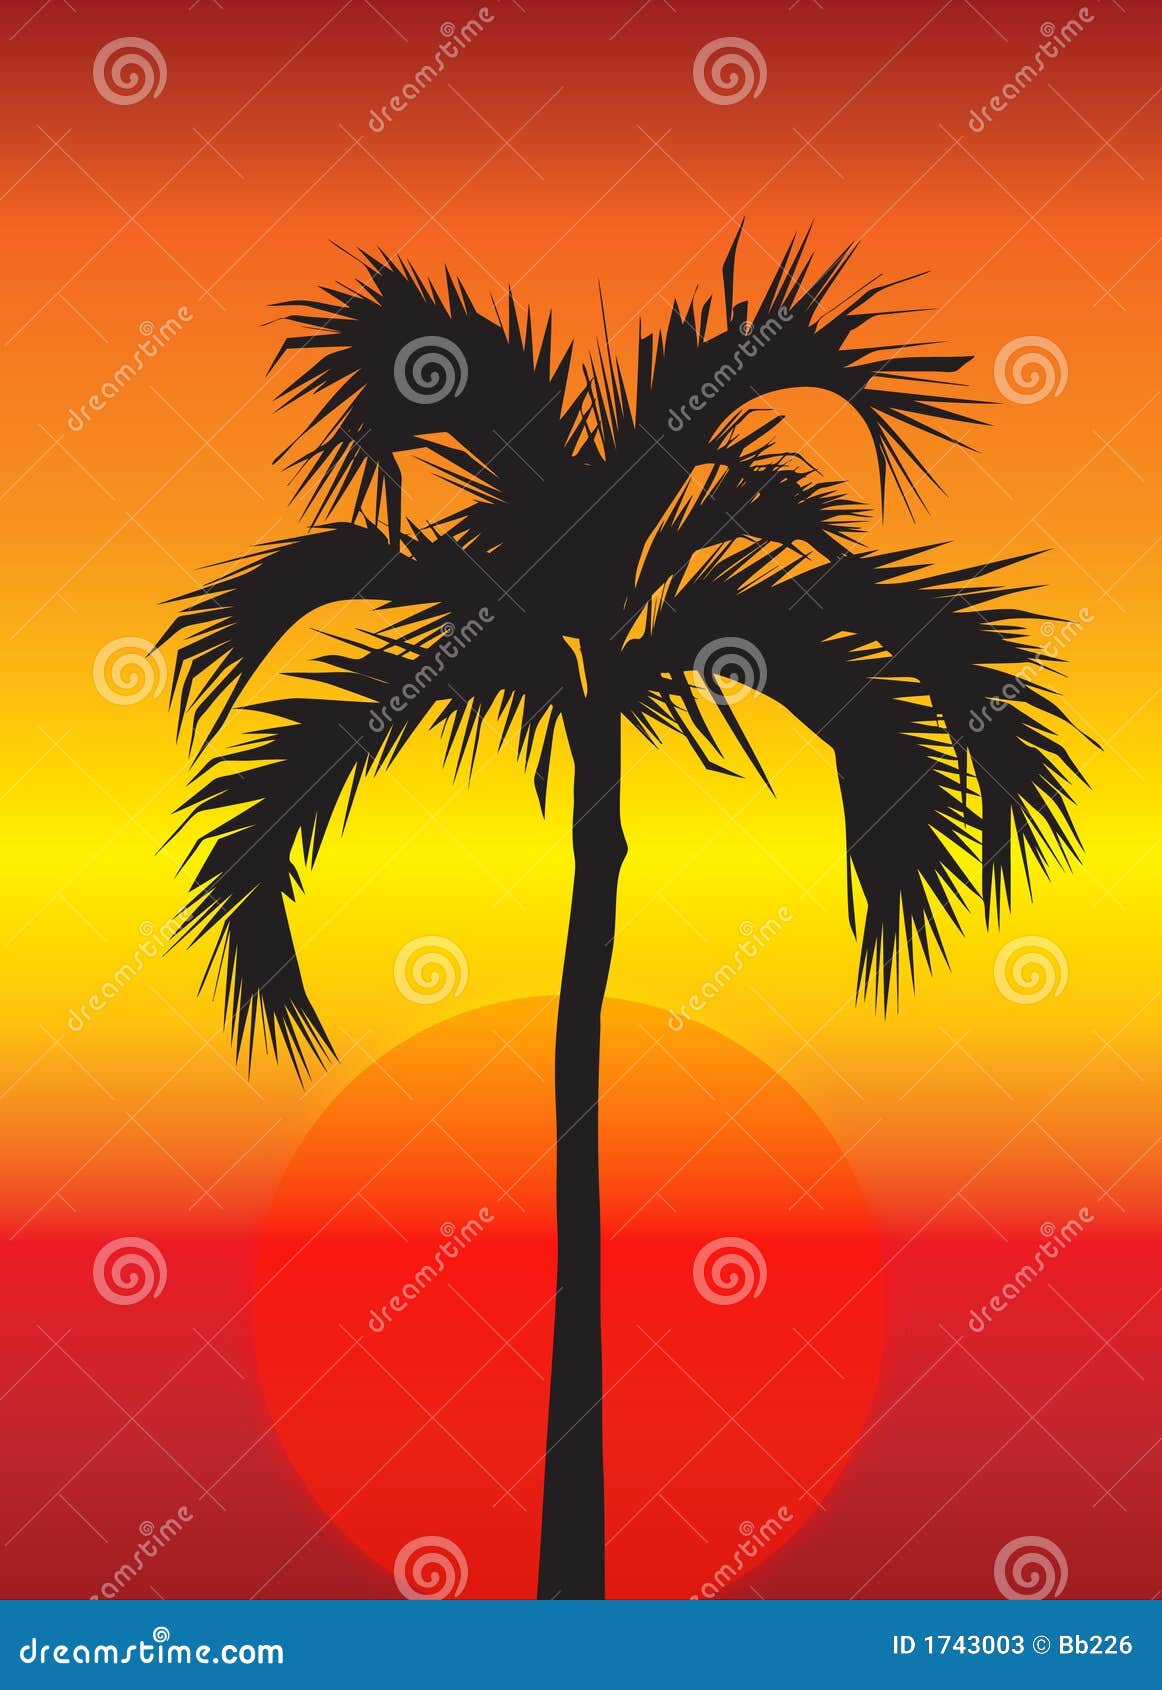 Palmeira no por do sol. Uma ilustração brilhante, colorida do por do sol com a silhueta de uma palmeira tropical no meio.